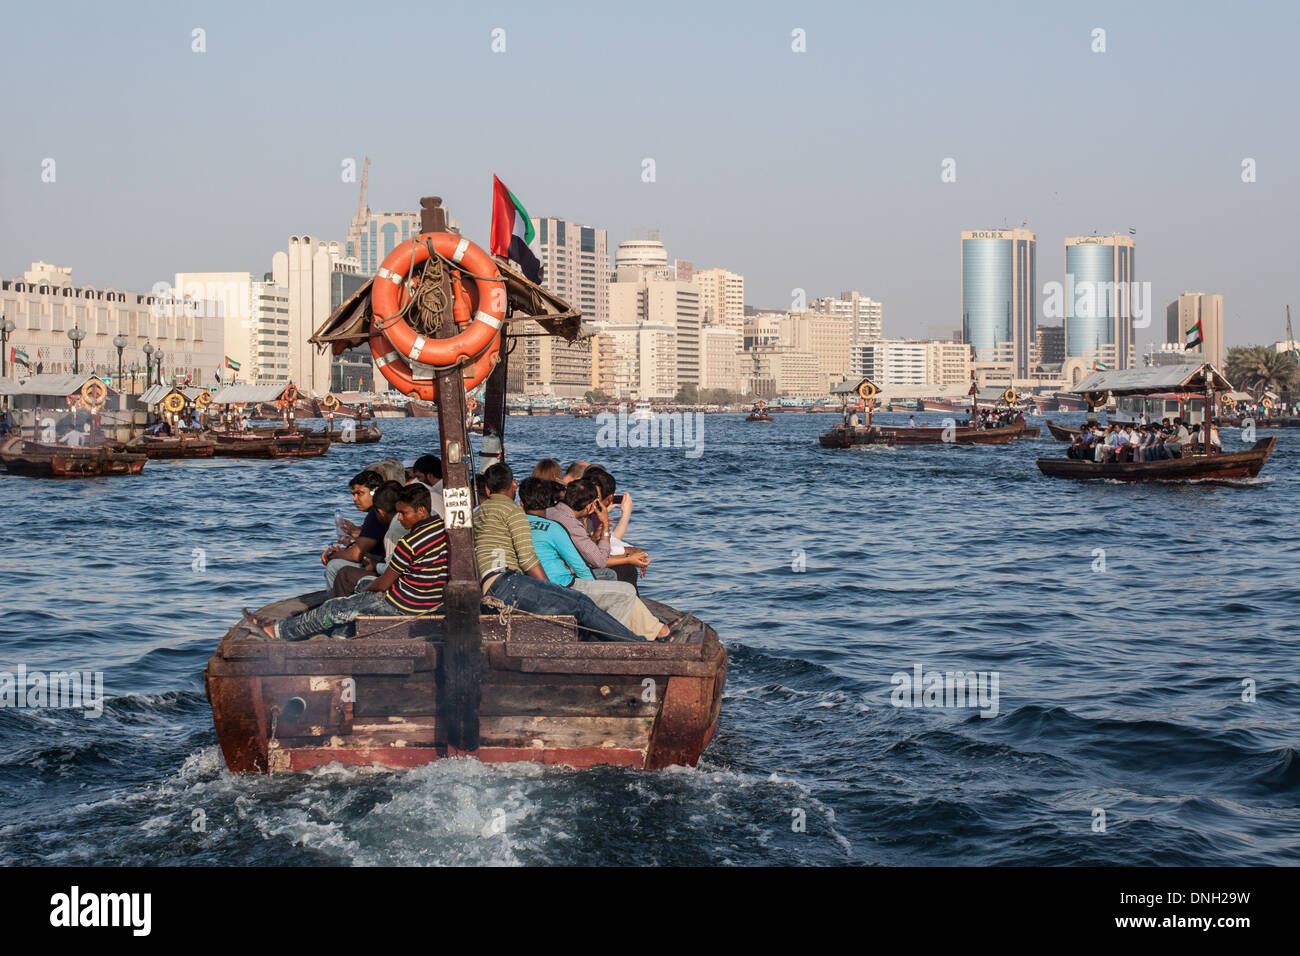 Barca tradizionale, l'Abra, attraversando il torrente DI DUBAI CON IL ROLEX TORRI IN BACKGROUND, DUBAI, Emirati arabi uniti, MEDIO ORIENTE Foto Stock